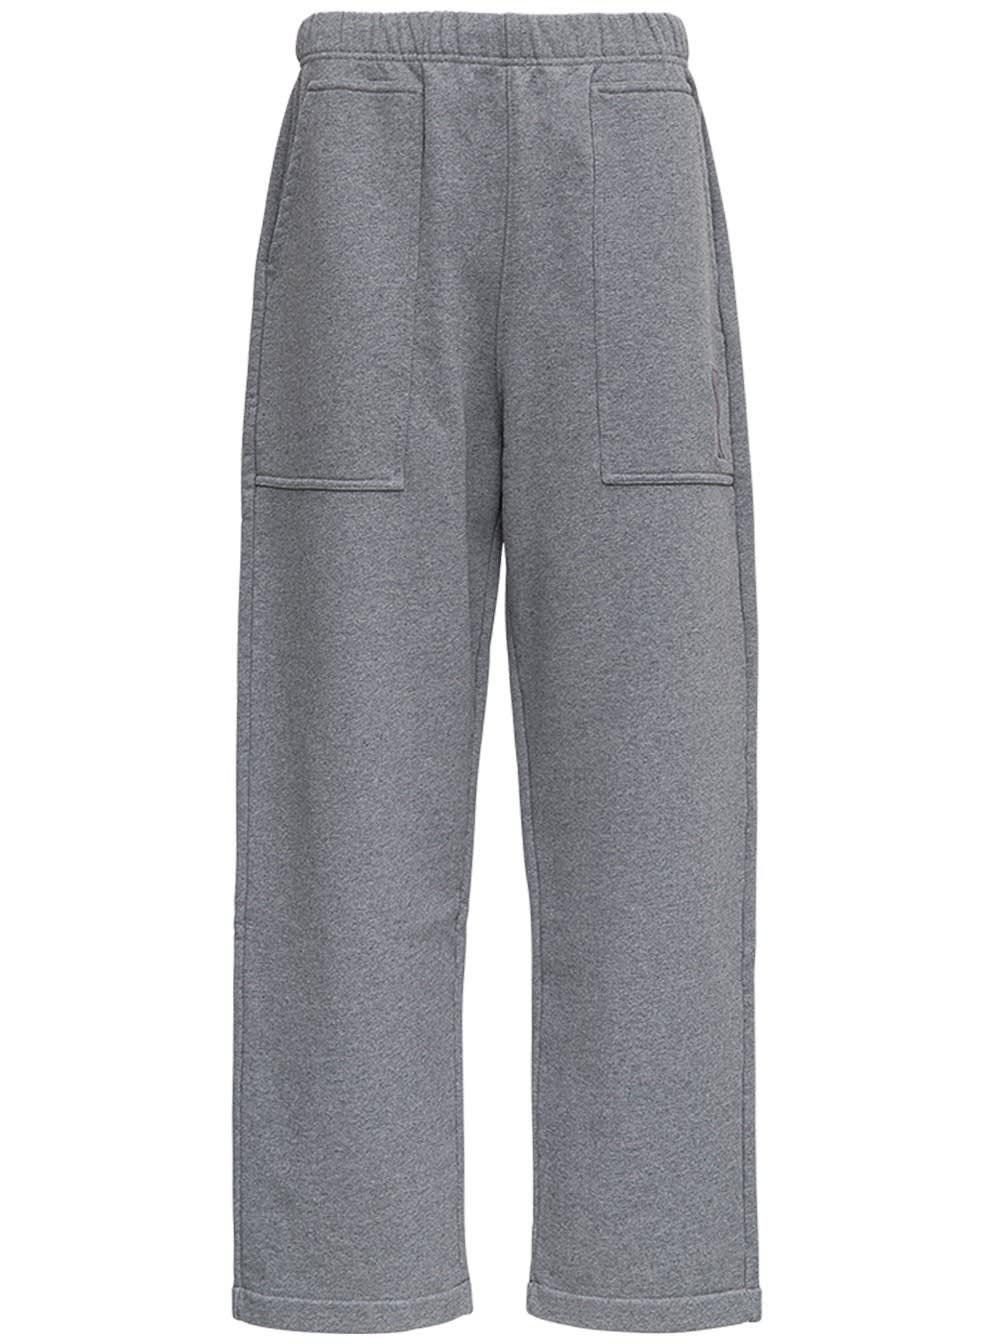 Ami Alexandre Mattiussi Grey Organic Cotton Trousers